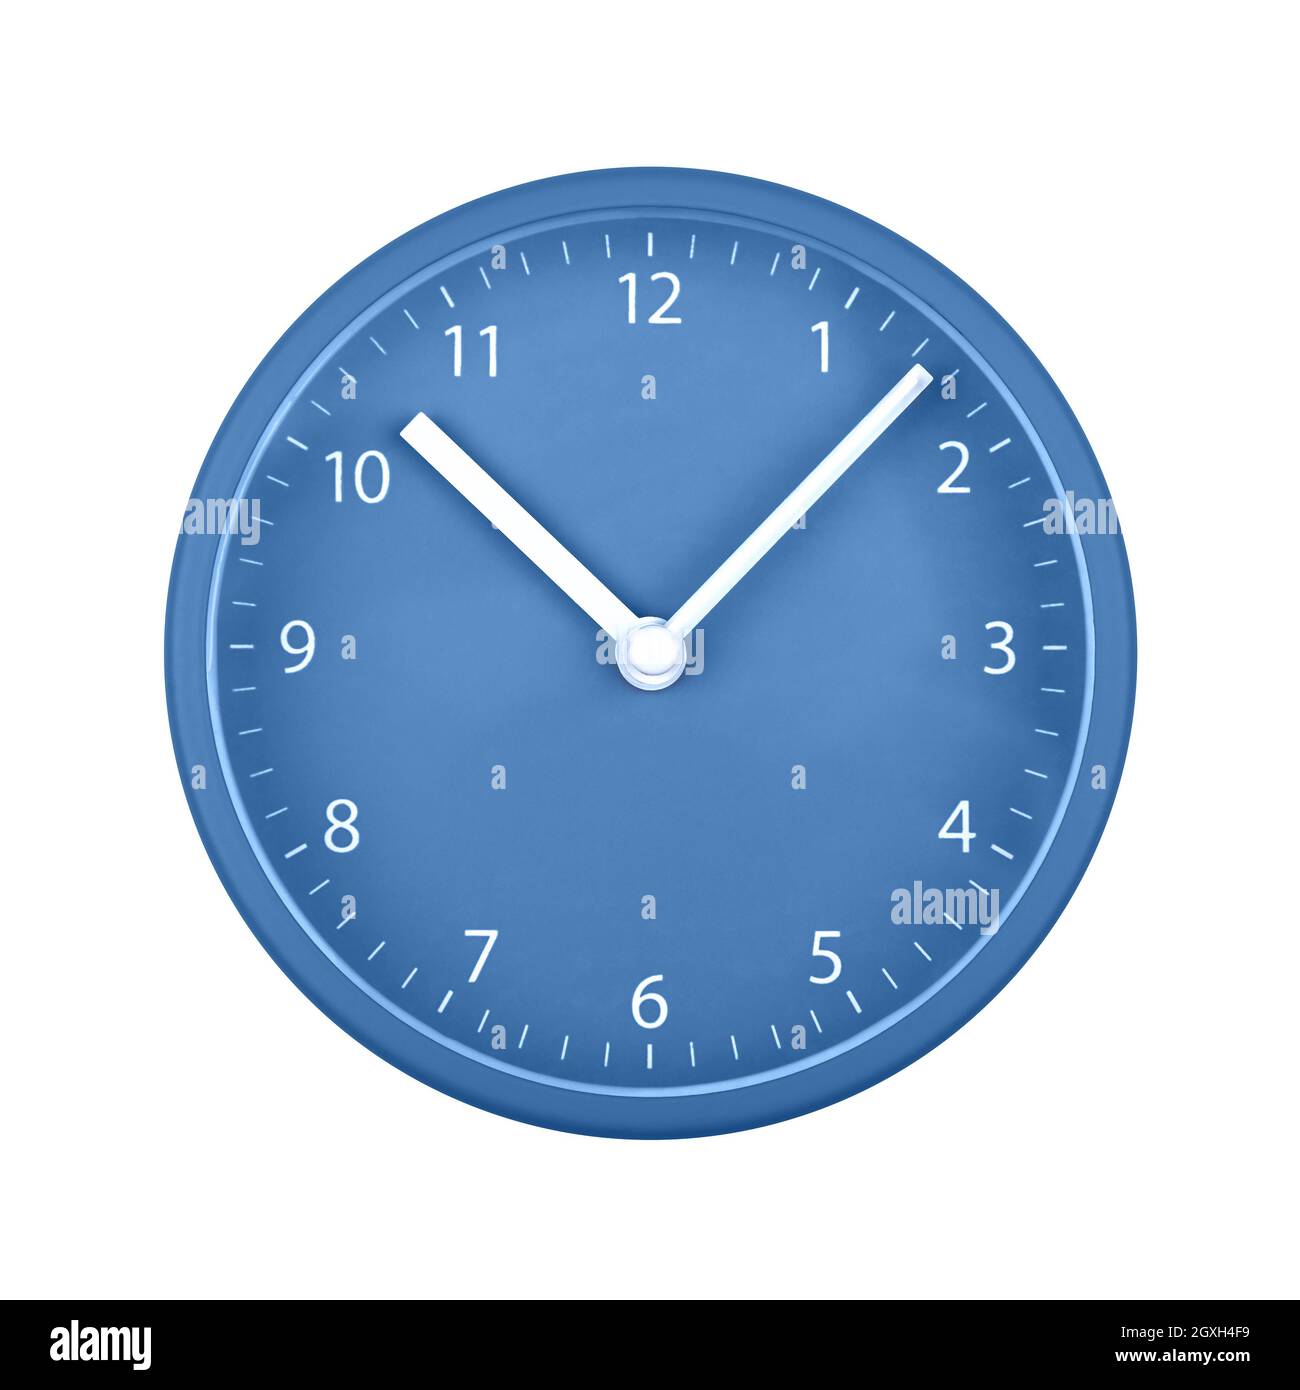 Primer plano reloj de pared azul con números arábigos, manos de hora y  minuto aisladas sobre fondo blanco Fotografía de stock - Alamy